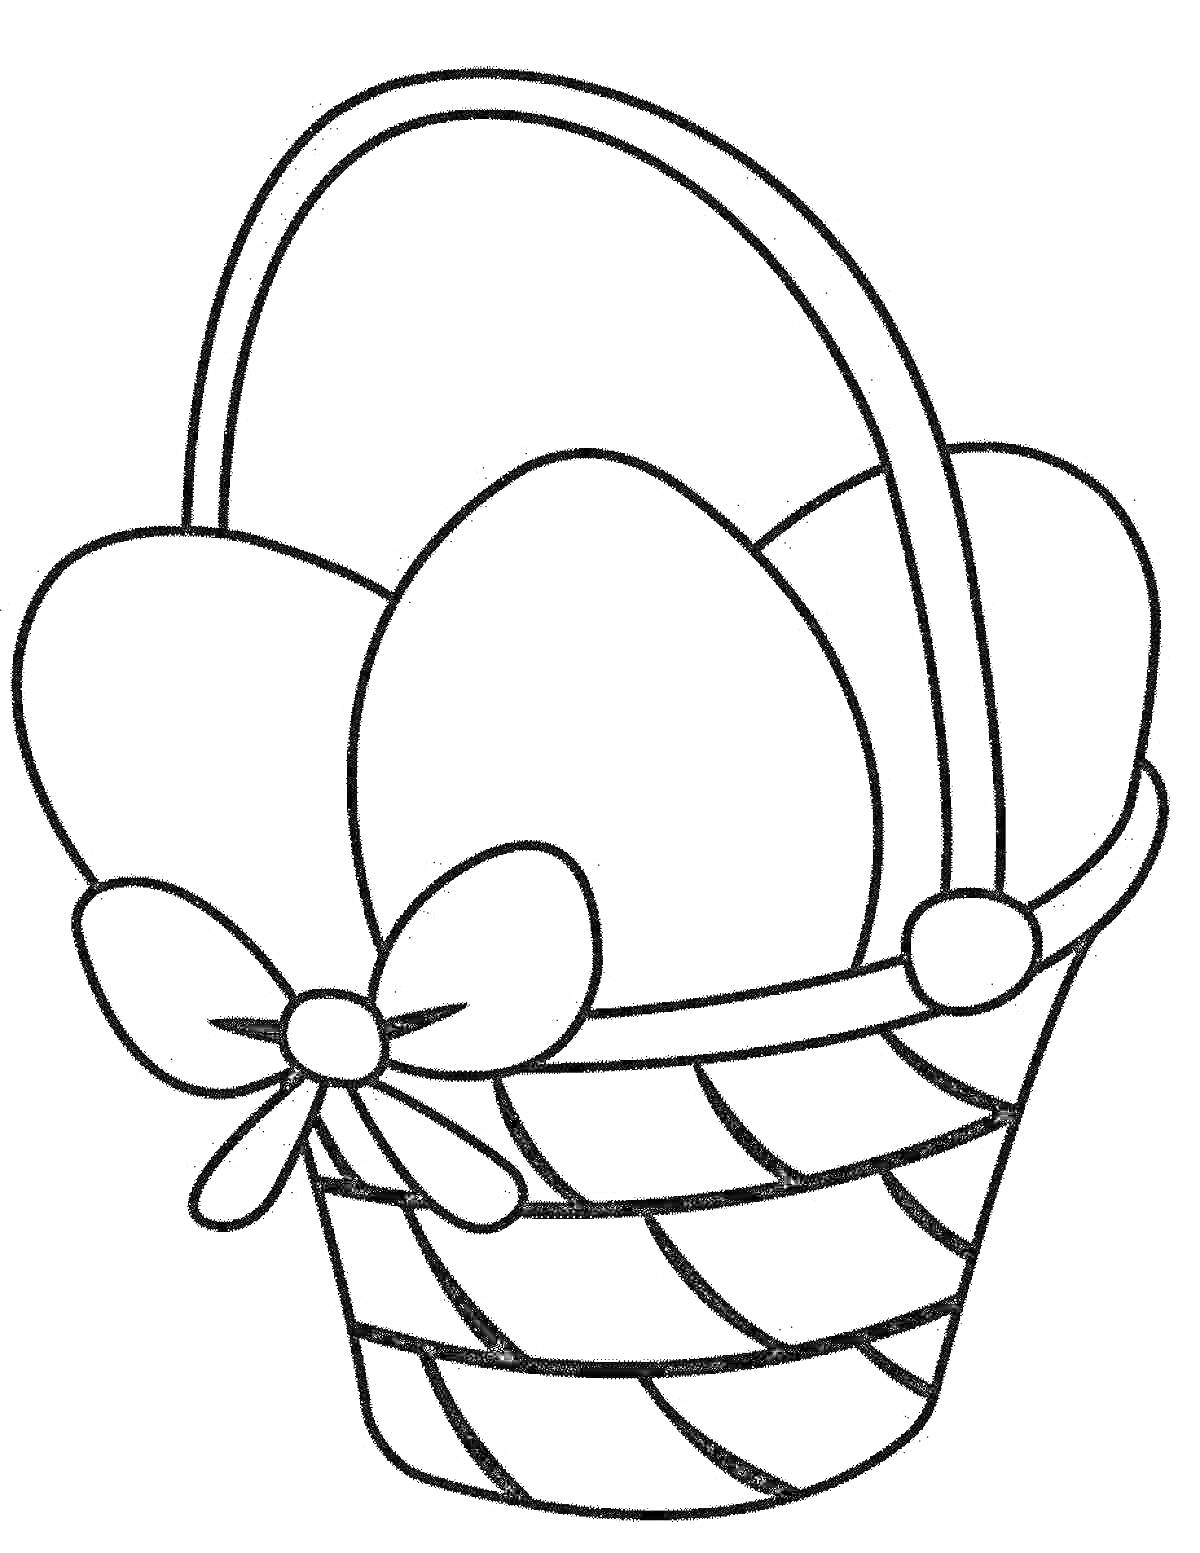 Раскраска Корзинка с яйцами и бантом